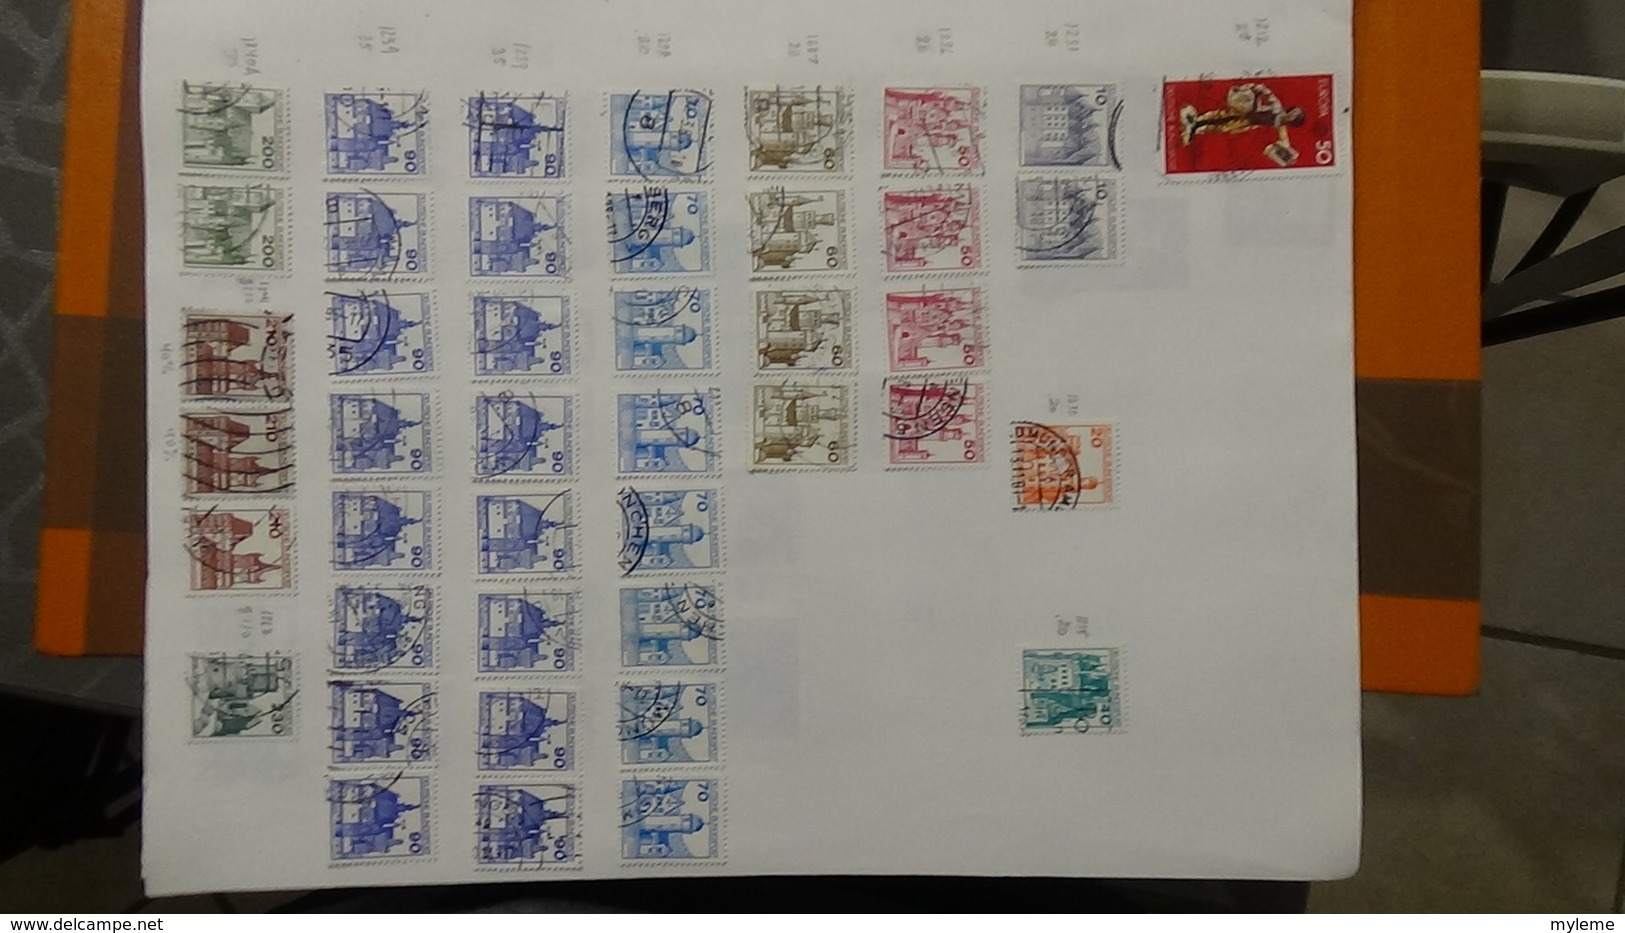 A238 Cahier de timbres d'Allemagne dont fin de catalogue. A saisir !!! Voir commentaires